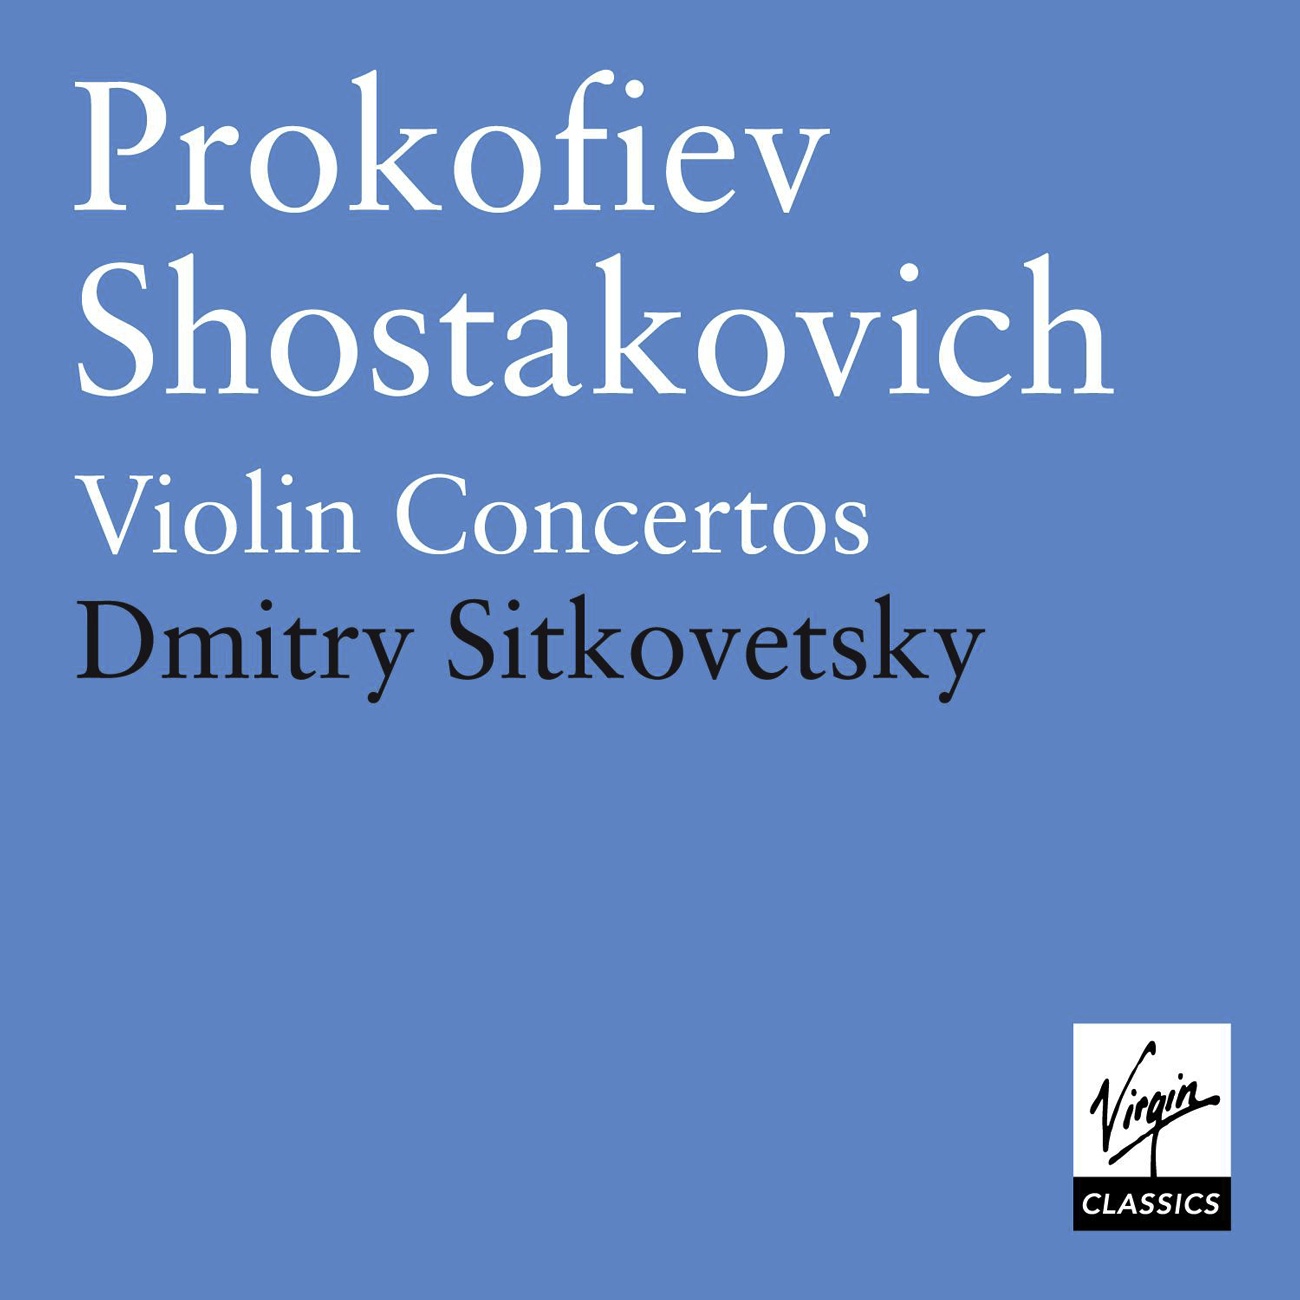 Violin Concerto No. 2 in C sharp minor Op. 129: II. Adagio